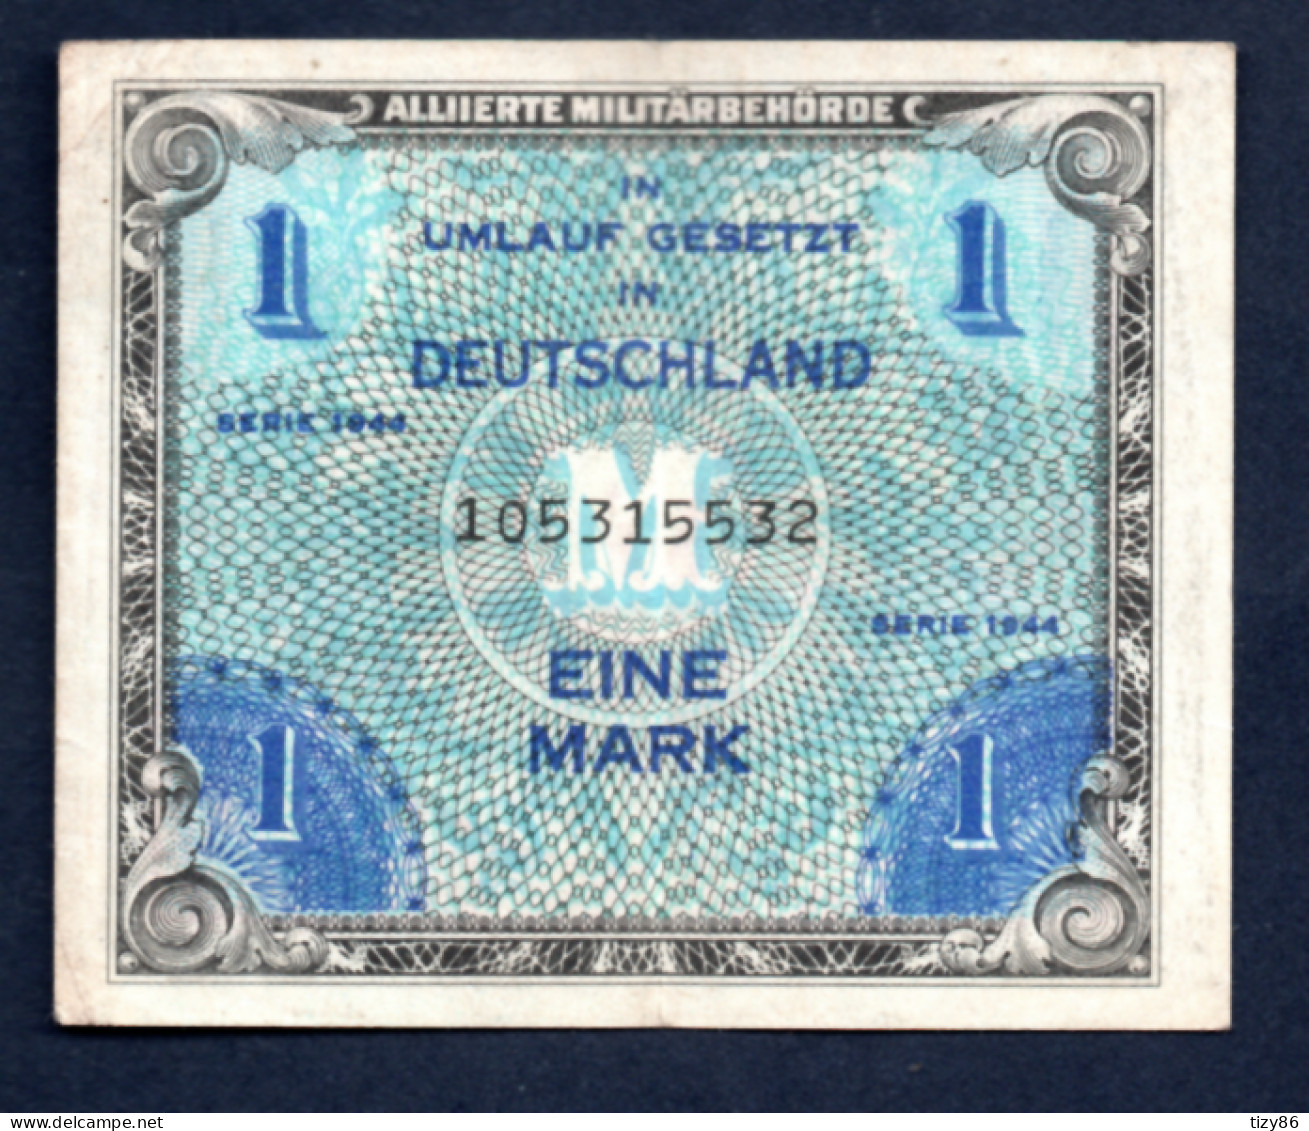 Banconota Germania 1 Mark - Serie 1944 - Tweede Wereldoorlog